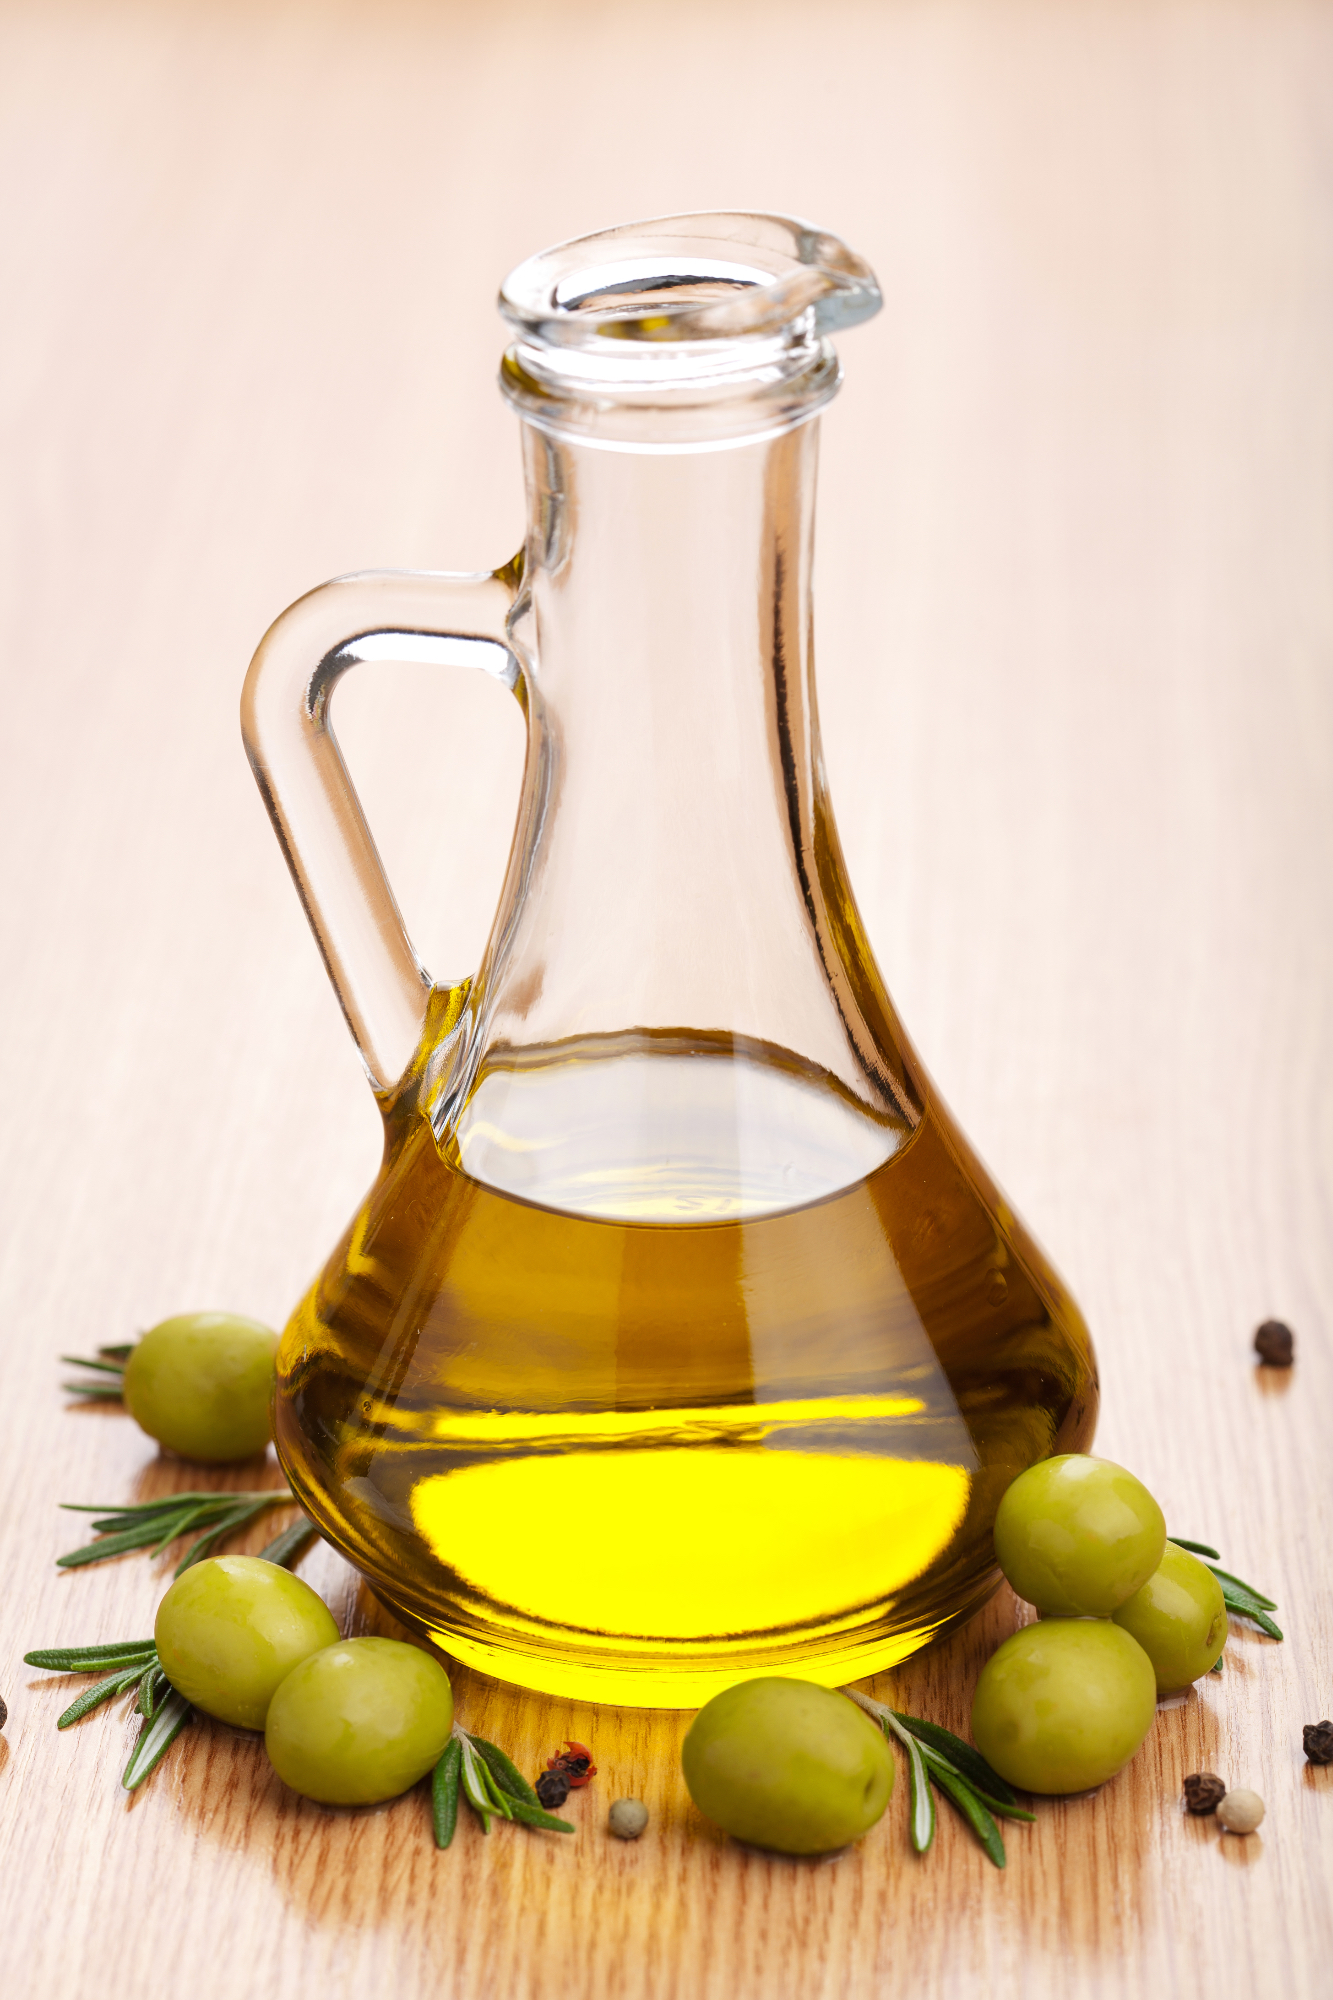 Olivno olje najdemo v marsikateri kuhinji